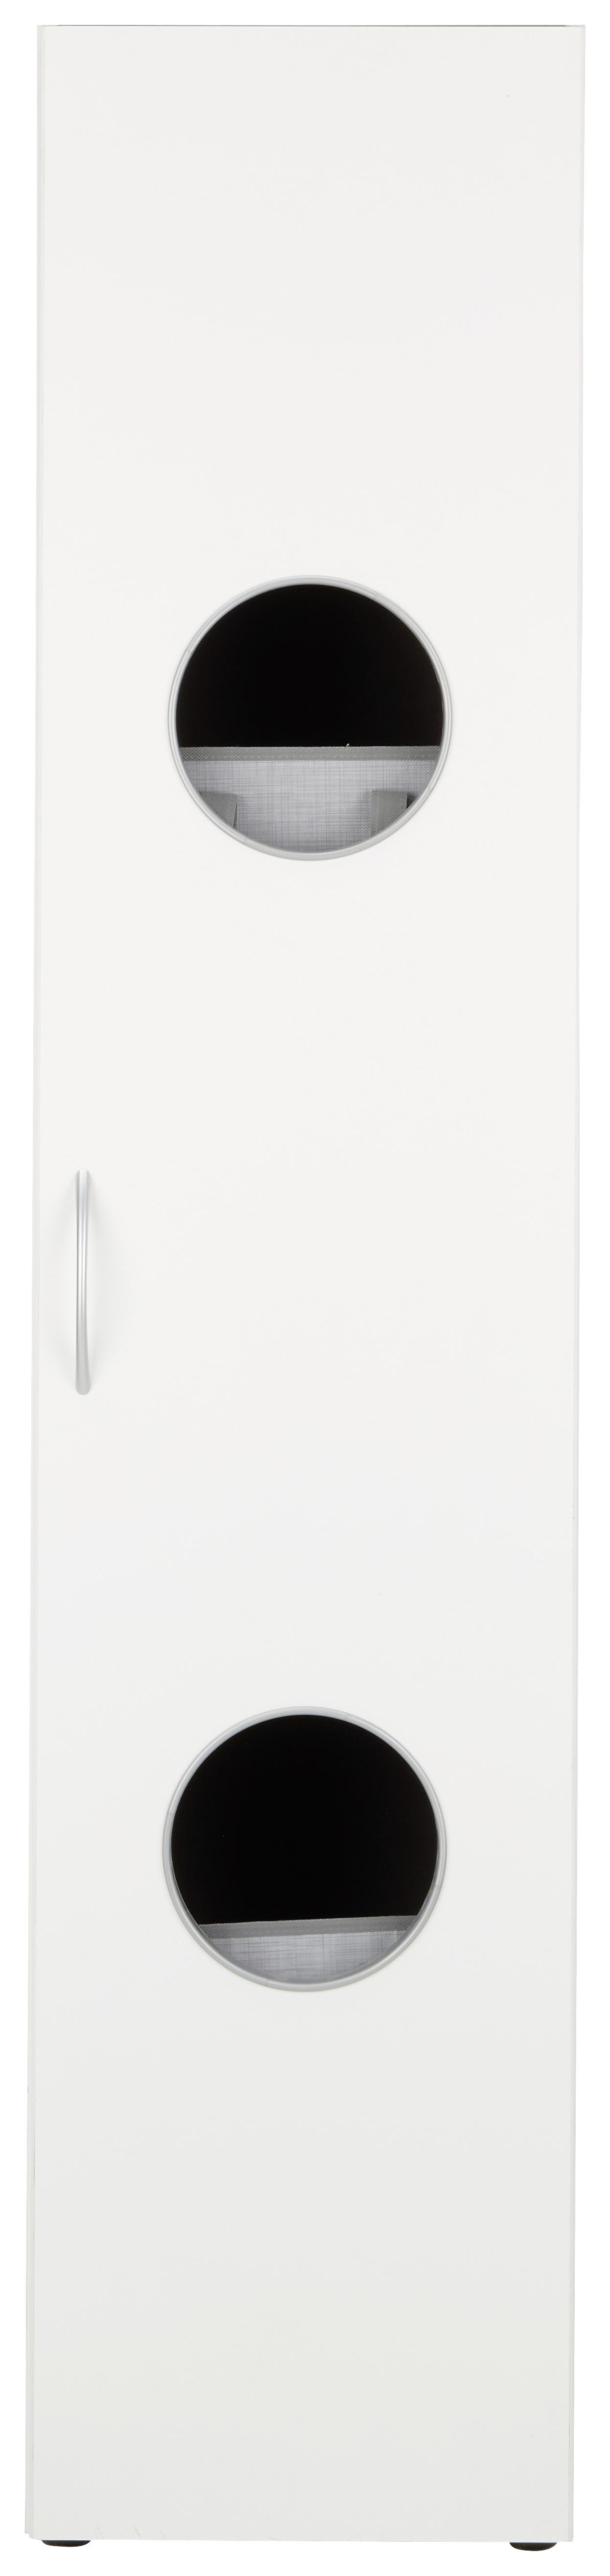 Skříň Mrk - bílá/barvy hliníku, Konvenční, kompozitní dřevo/plast (40/185cm) - Modern Living